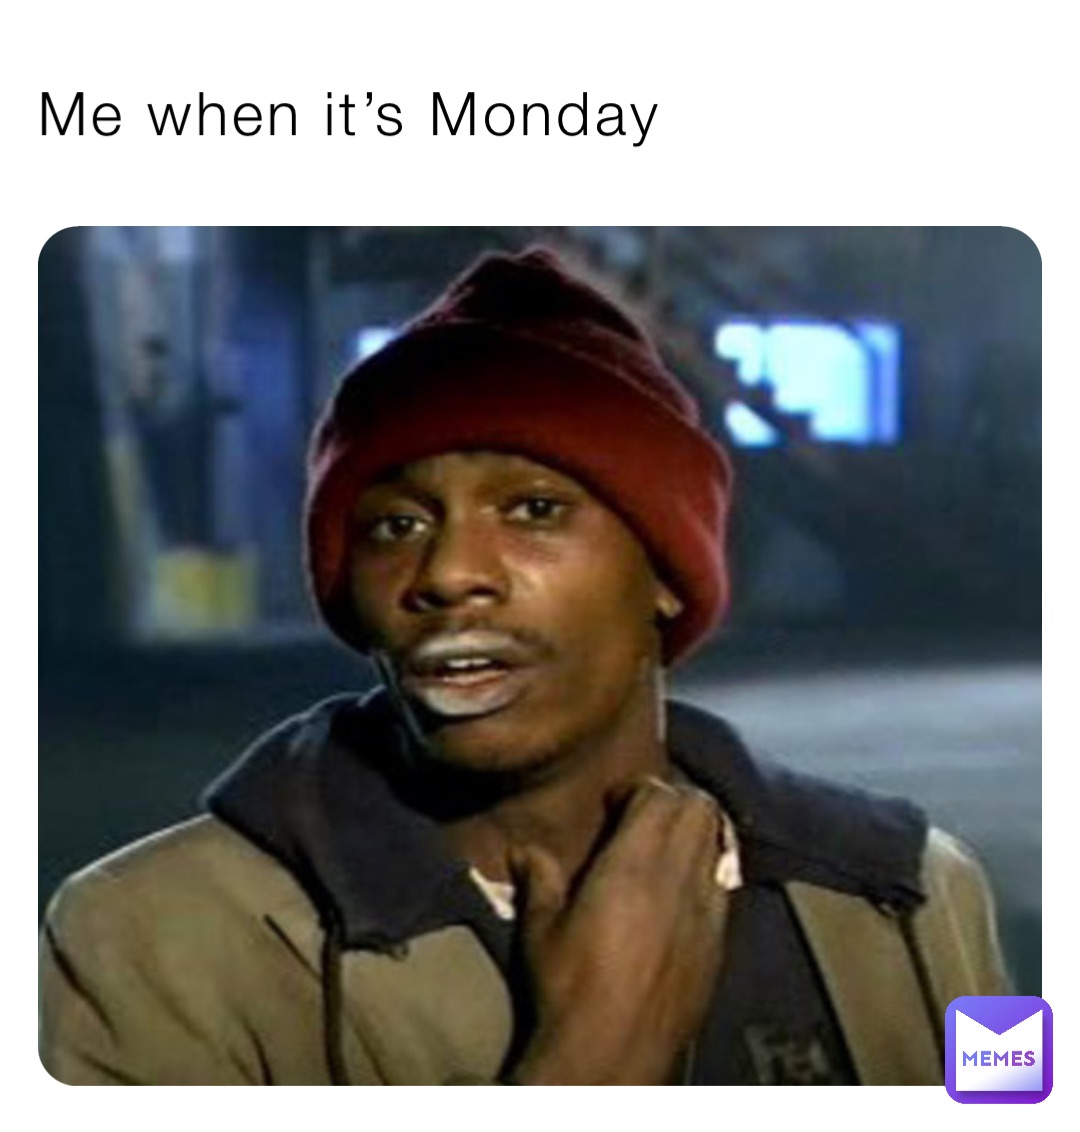 Me when it’s Monday